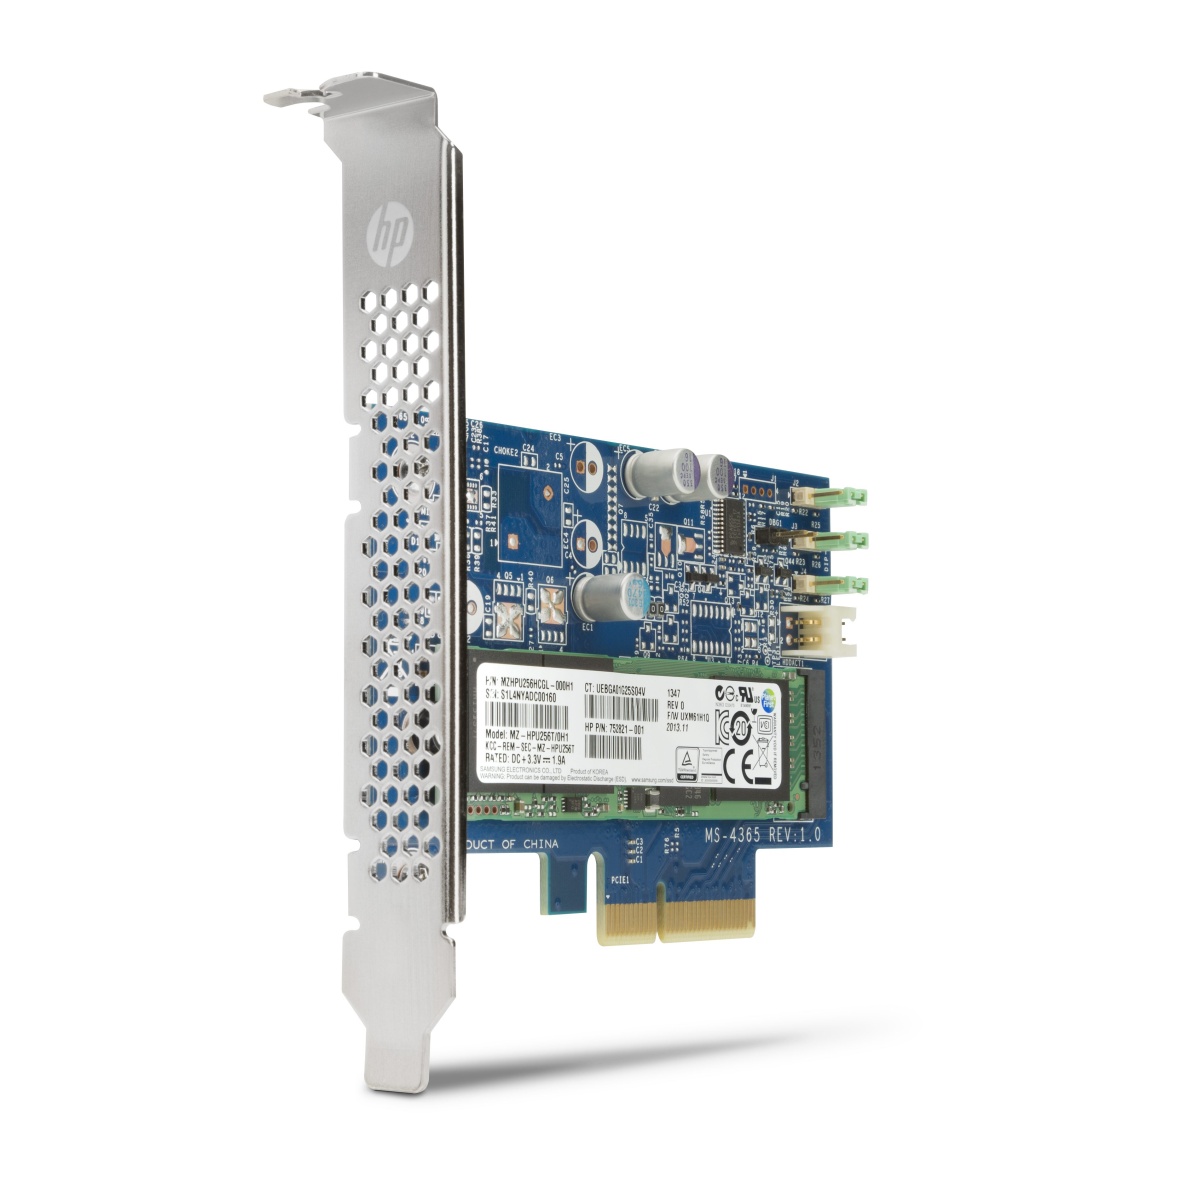 HP Z Turbo Drive 512 GB PCIe SSD (AHCI) (N8T12AA)